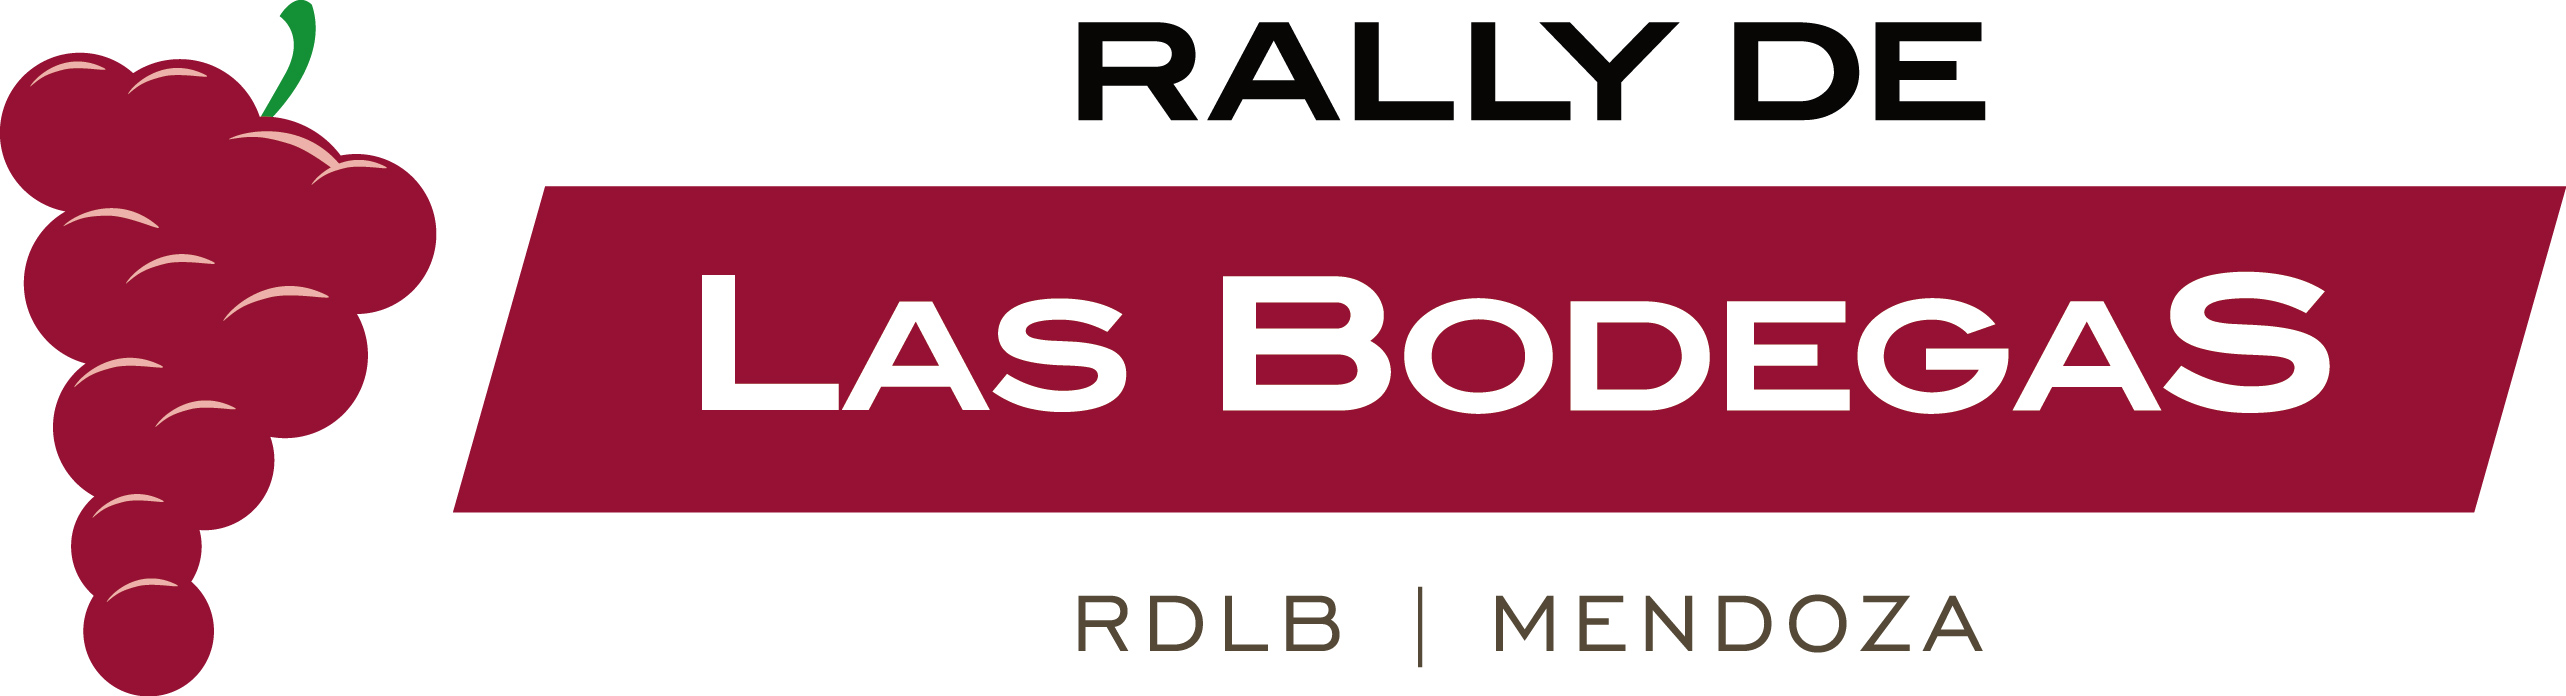 19 Rally de las Bodegas